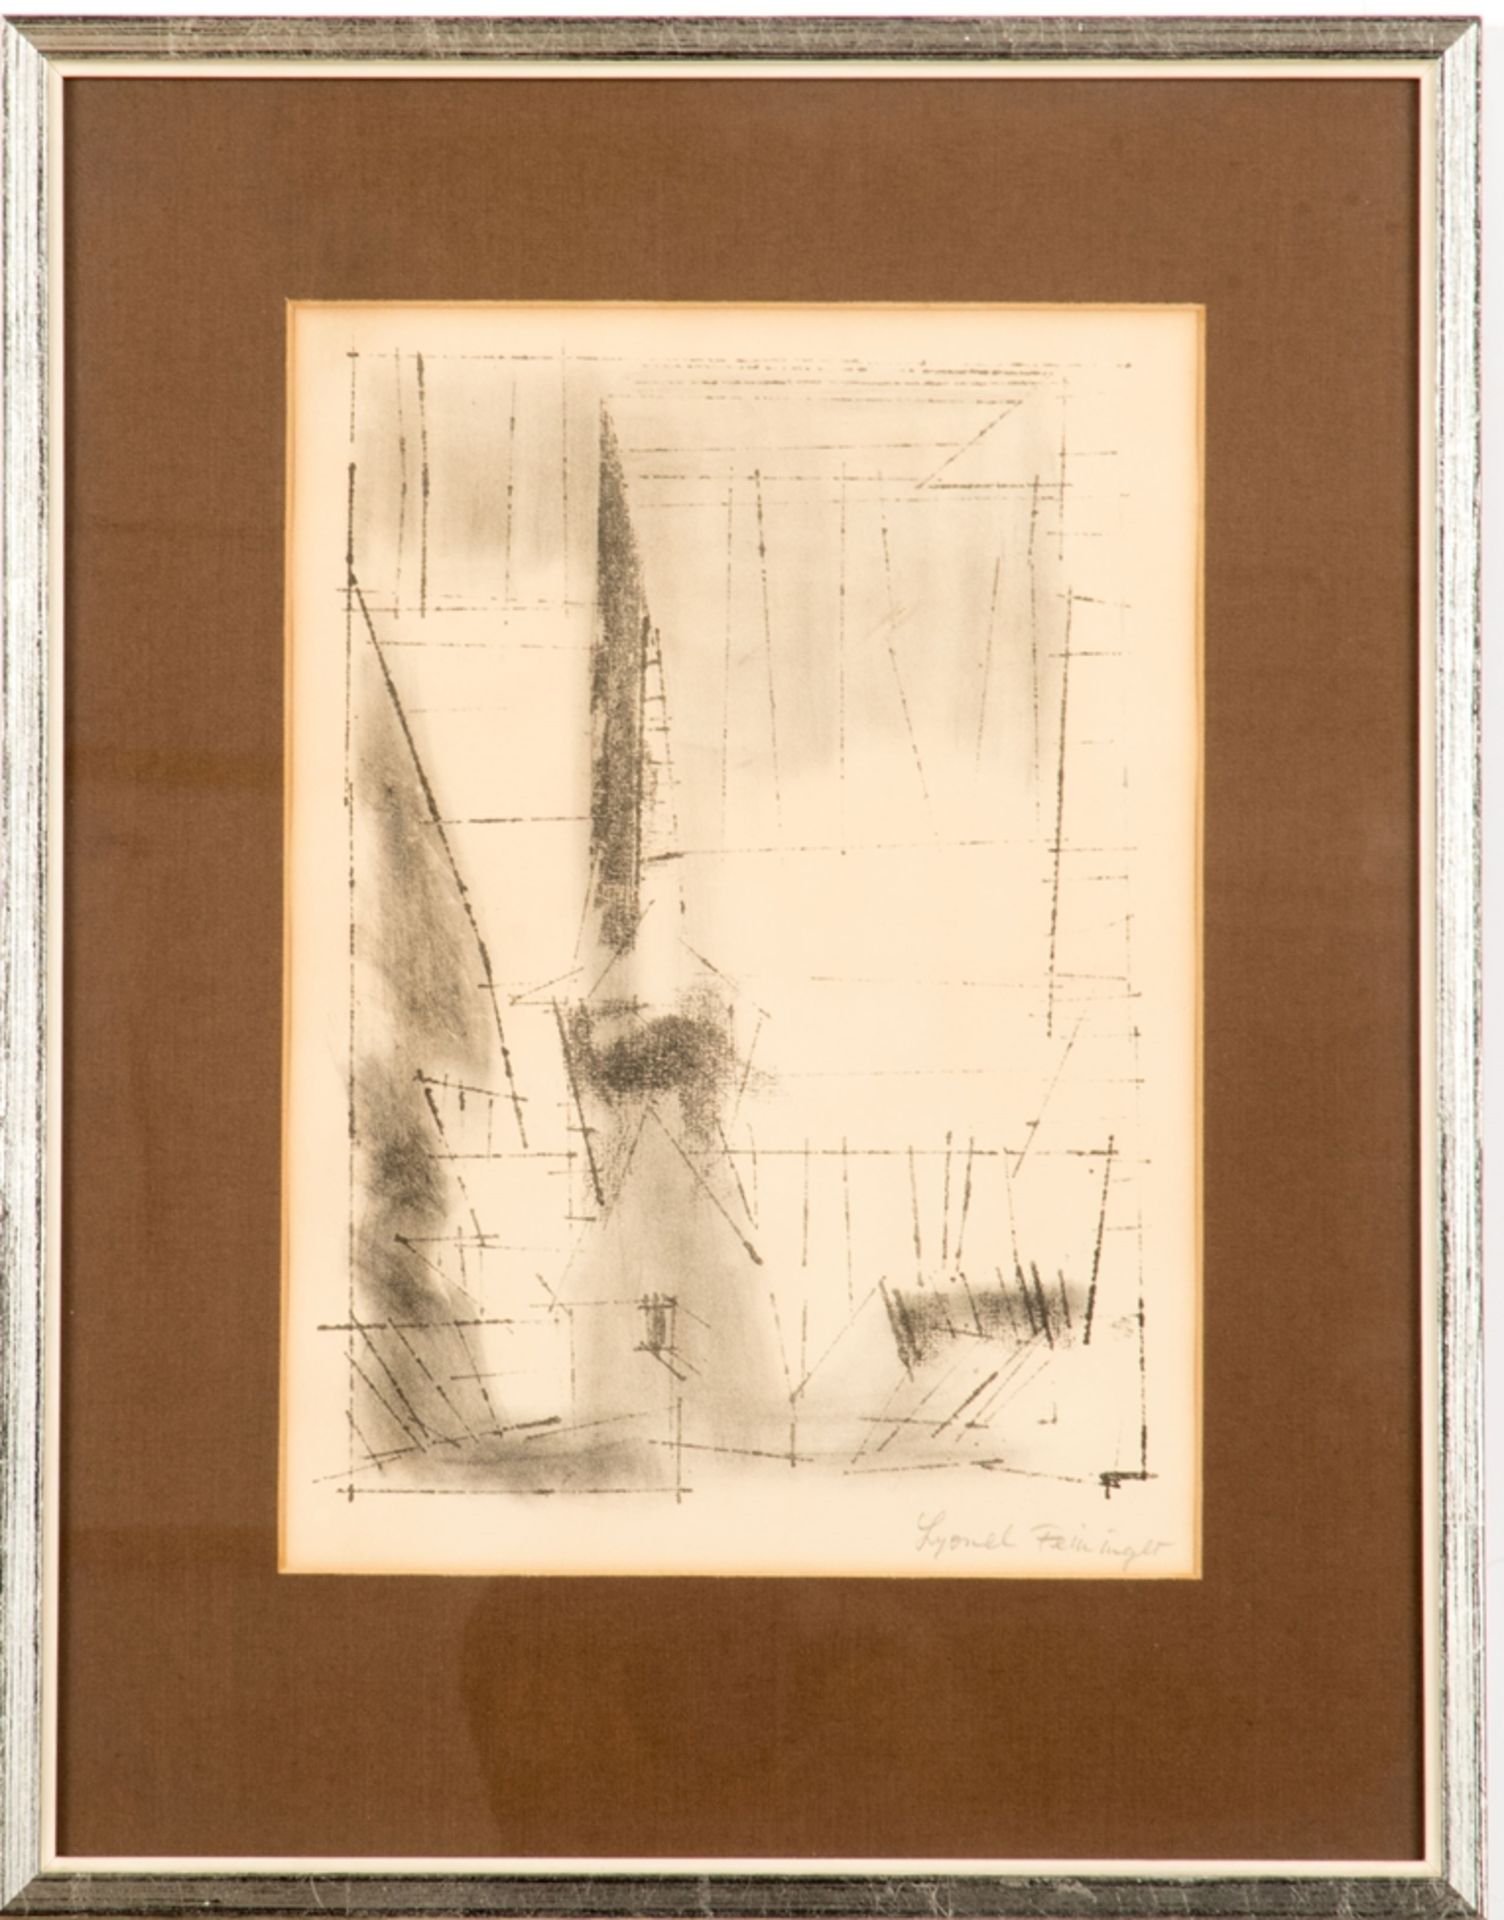 Feininger, Lyonel (1871-1956)